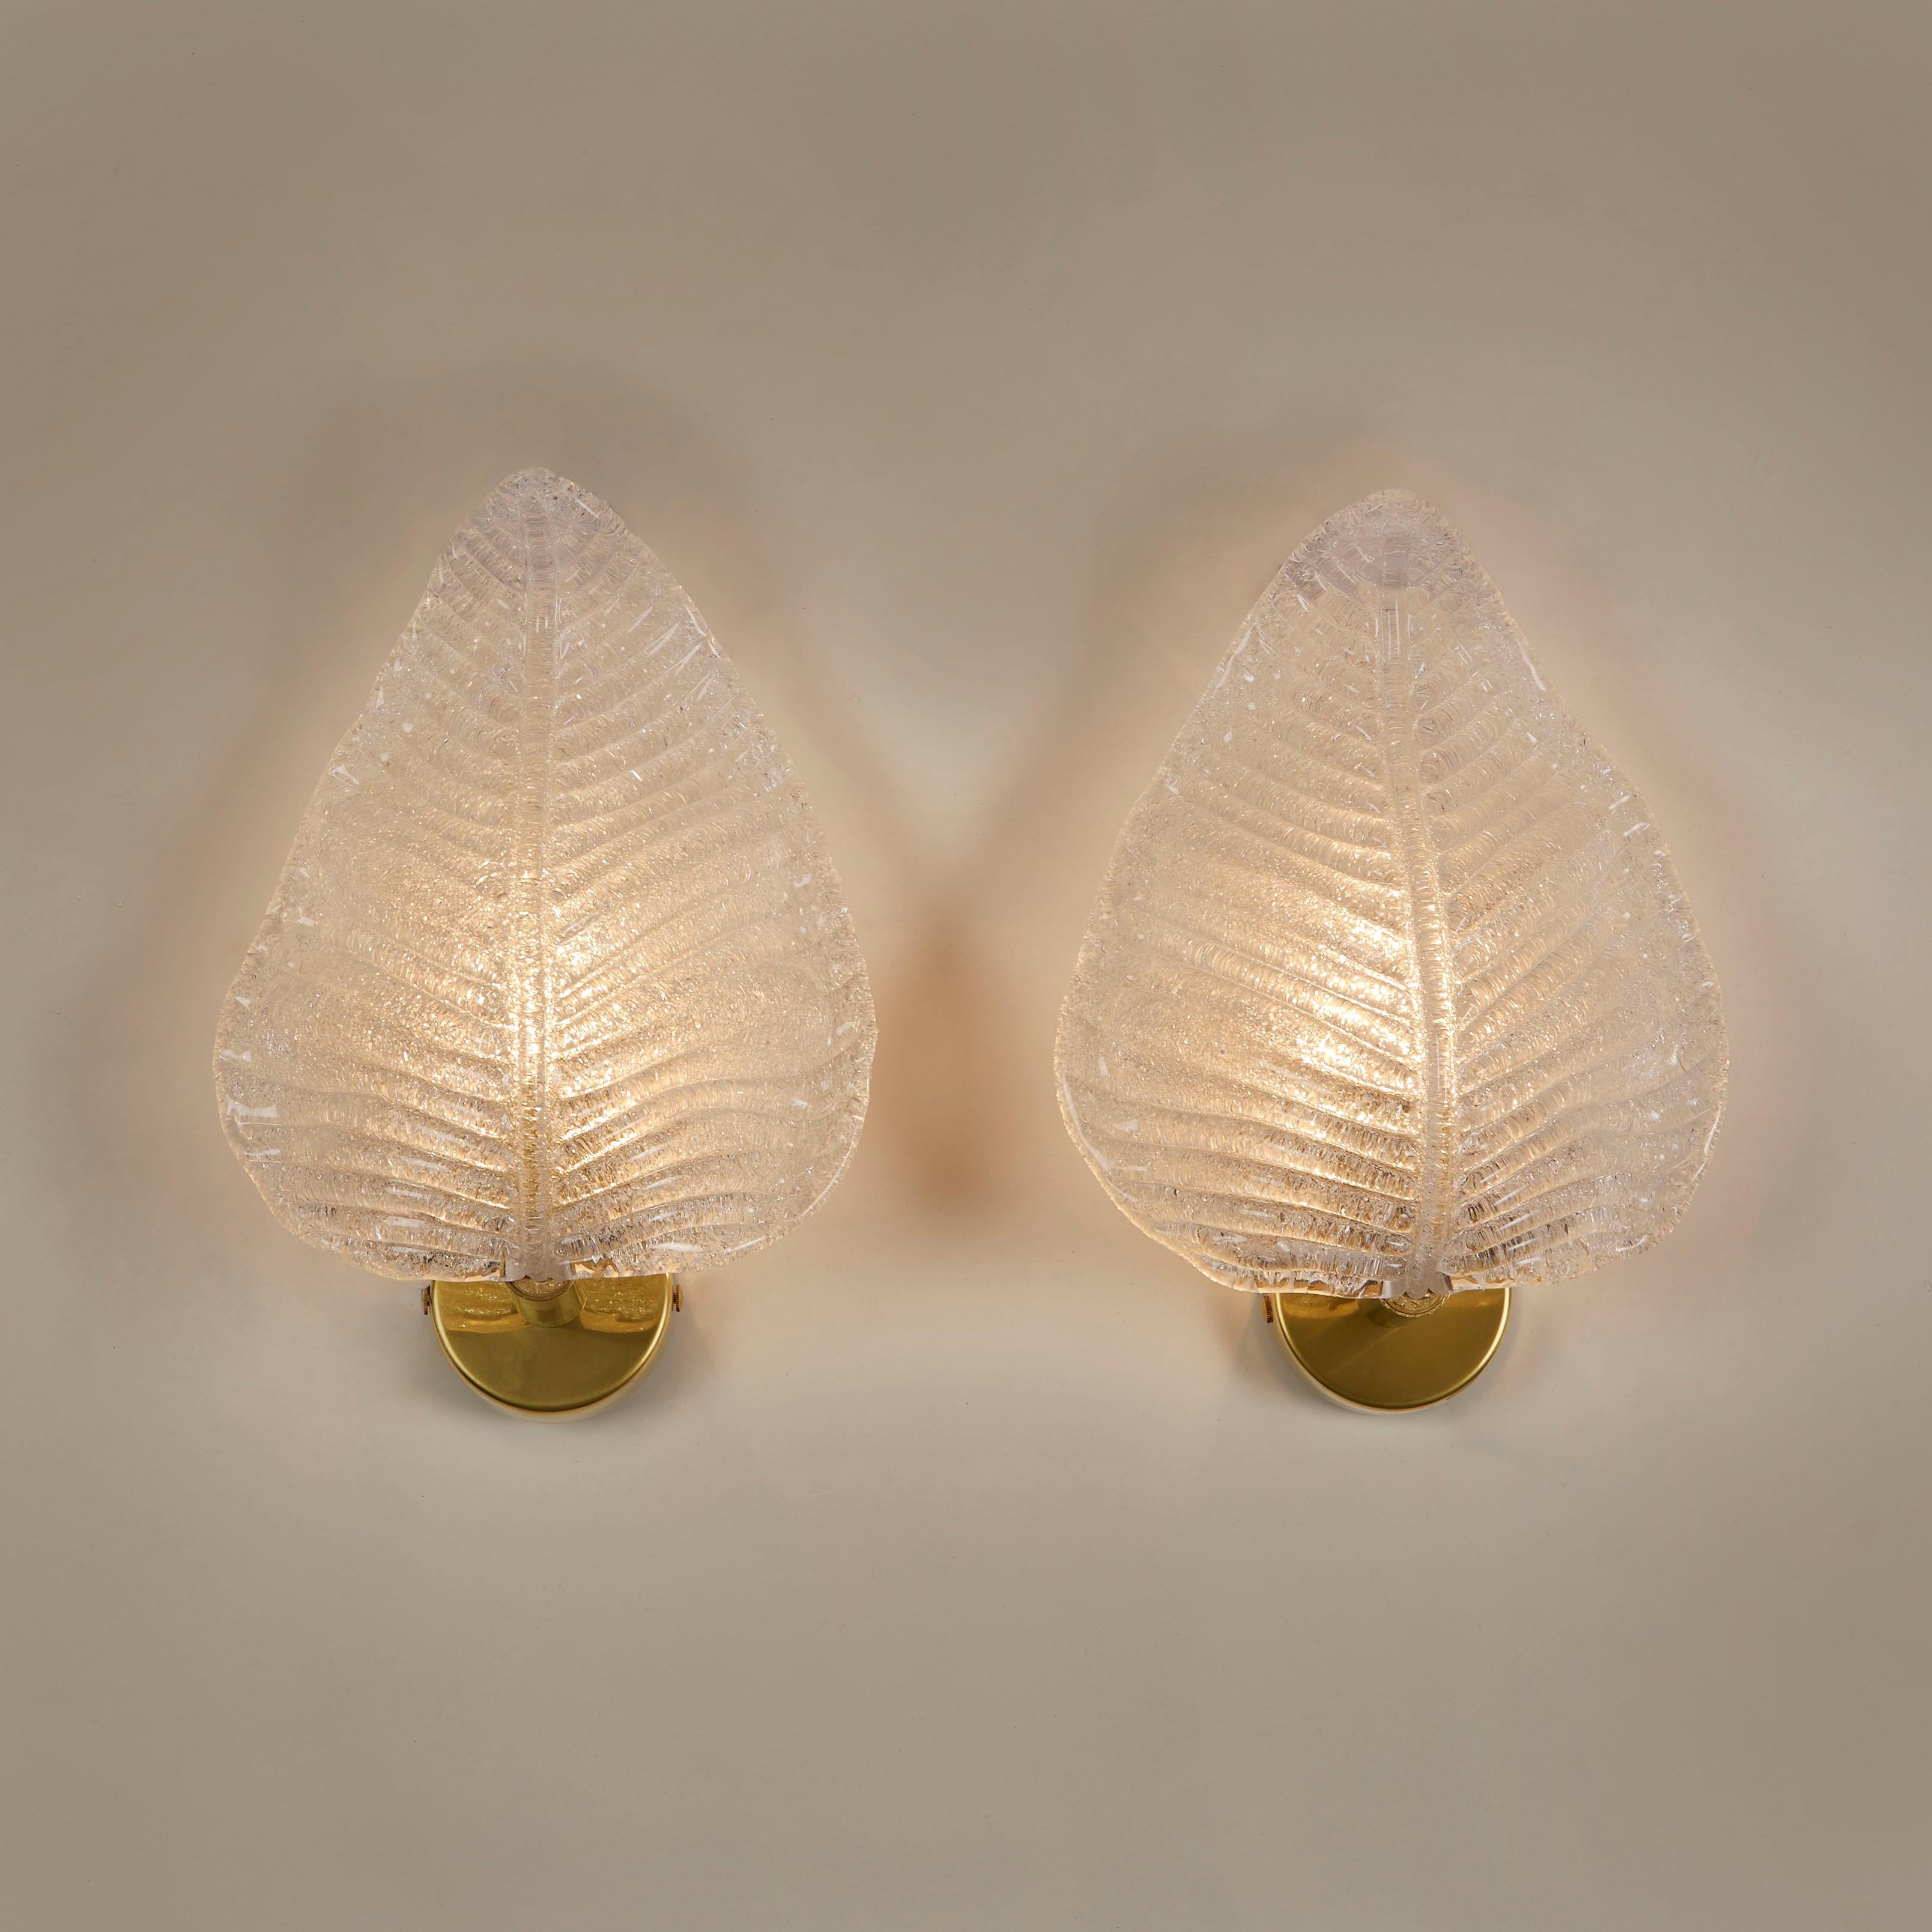 Dickes mattiertes Murano-Glas, das zu einem Blatt geformt und strukturiert wurde. Sitzt auf einer runden Wandhalterung aus Messing. Goldflecken sorgen für einen warmen Glanz.